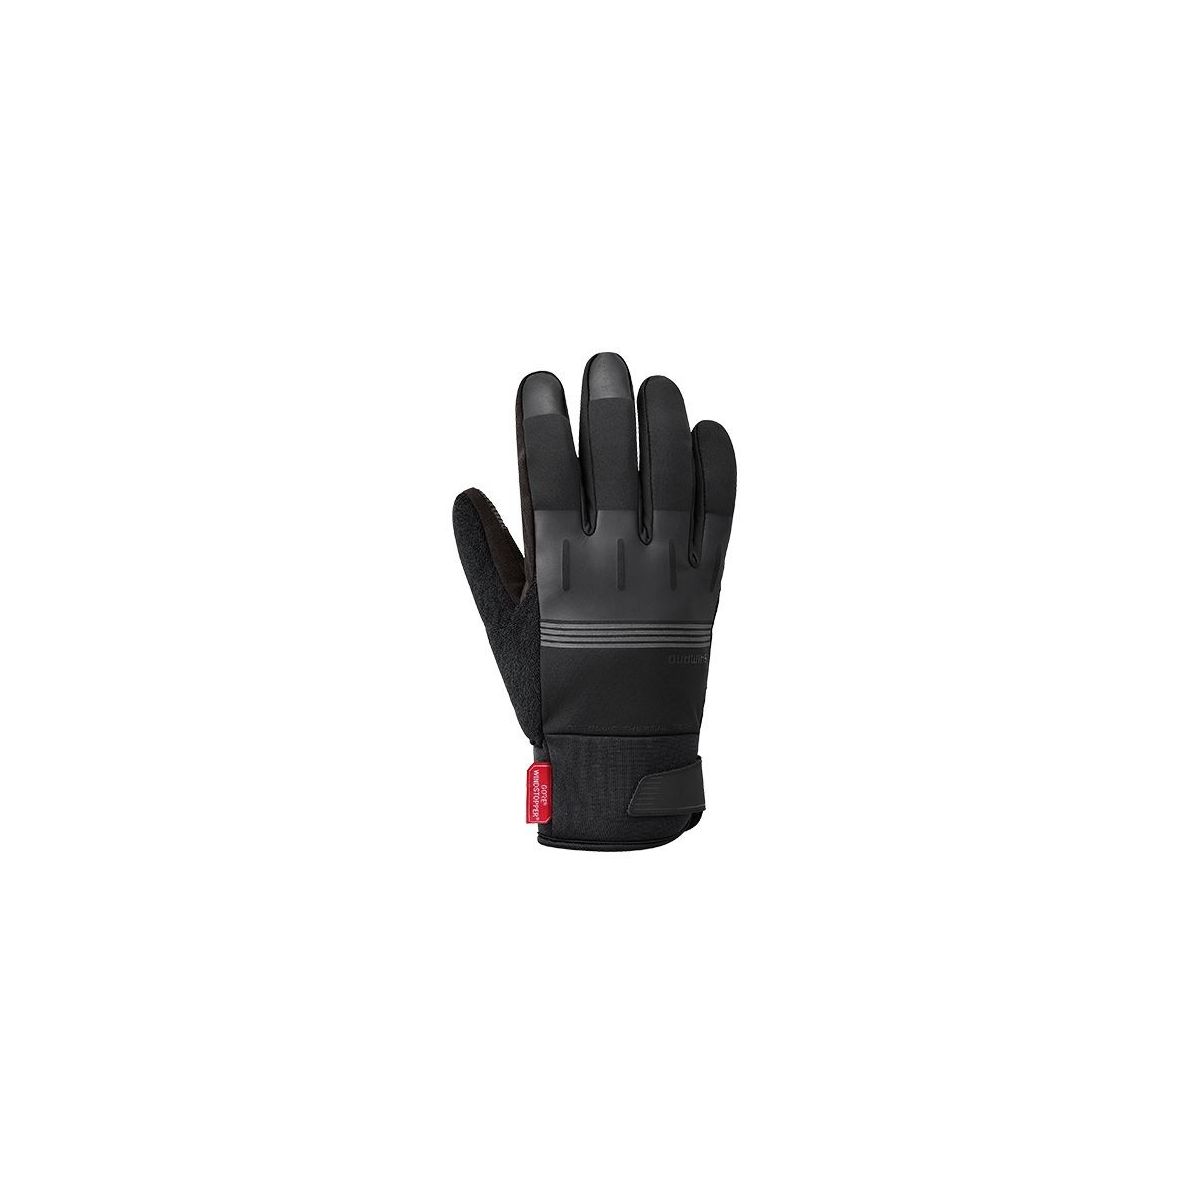 Shimano guantes invierno térmicos windstopper